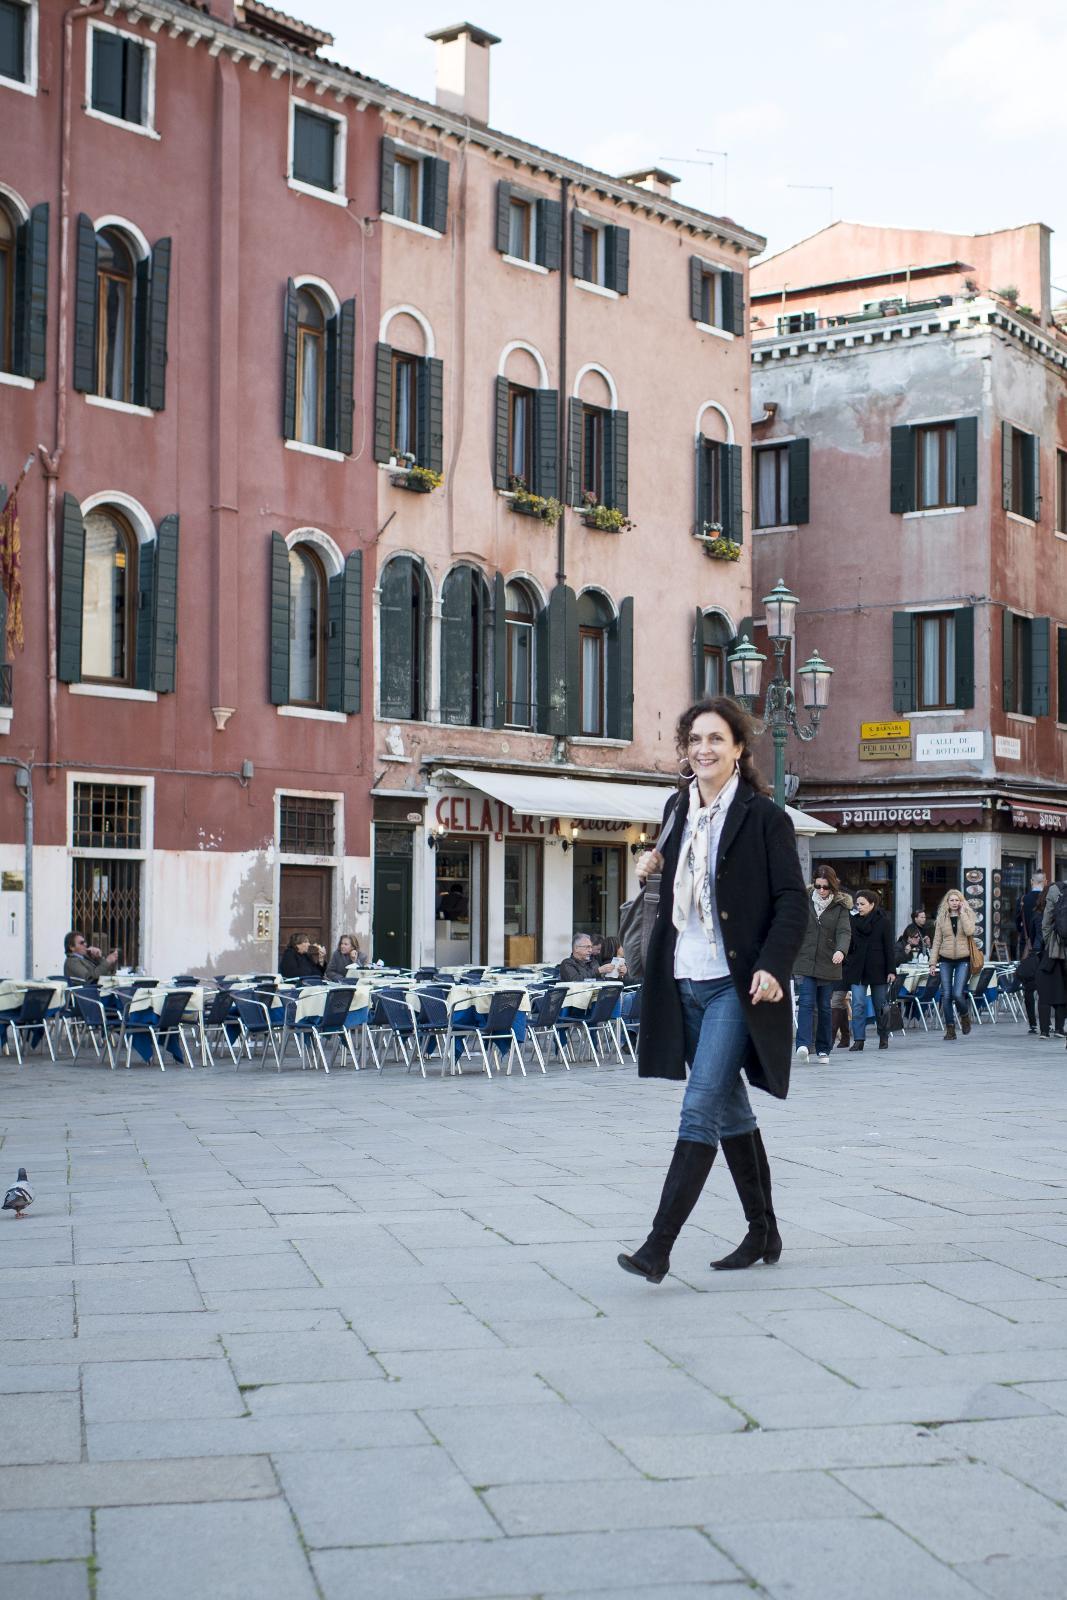 LOKALKJENT: Kristin Flood er norsk-italiensk og har bodd i Italia i nærmere 20 år. Hun elsker å vise frem Venezia til nordmenn som er på besøk.